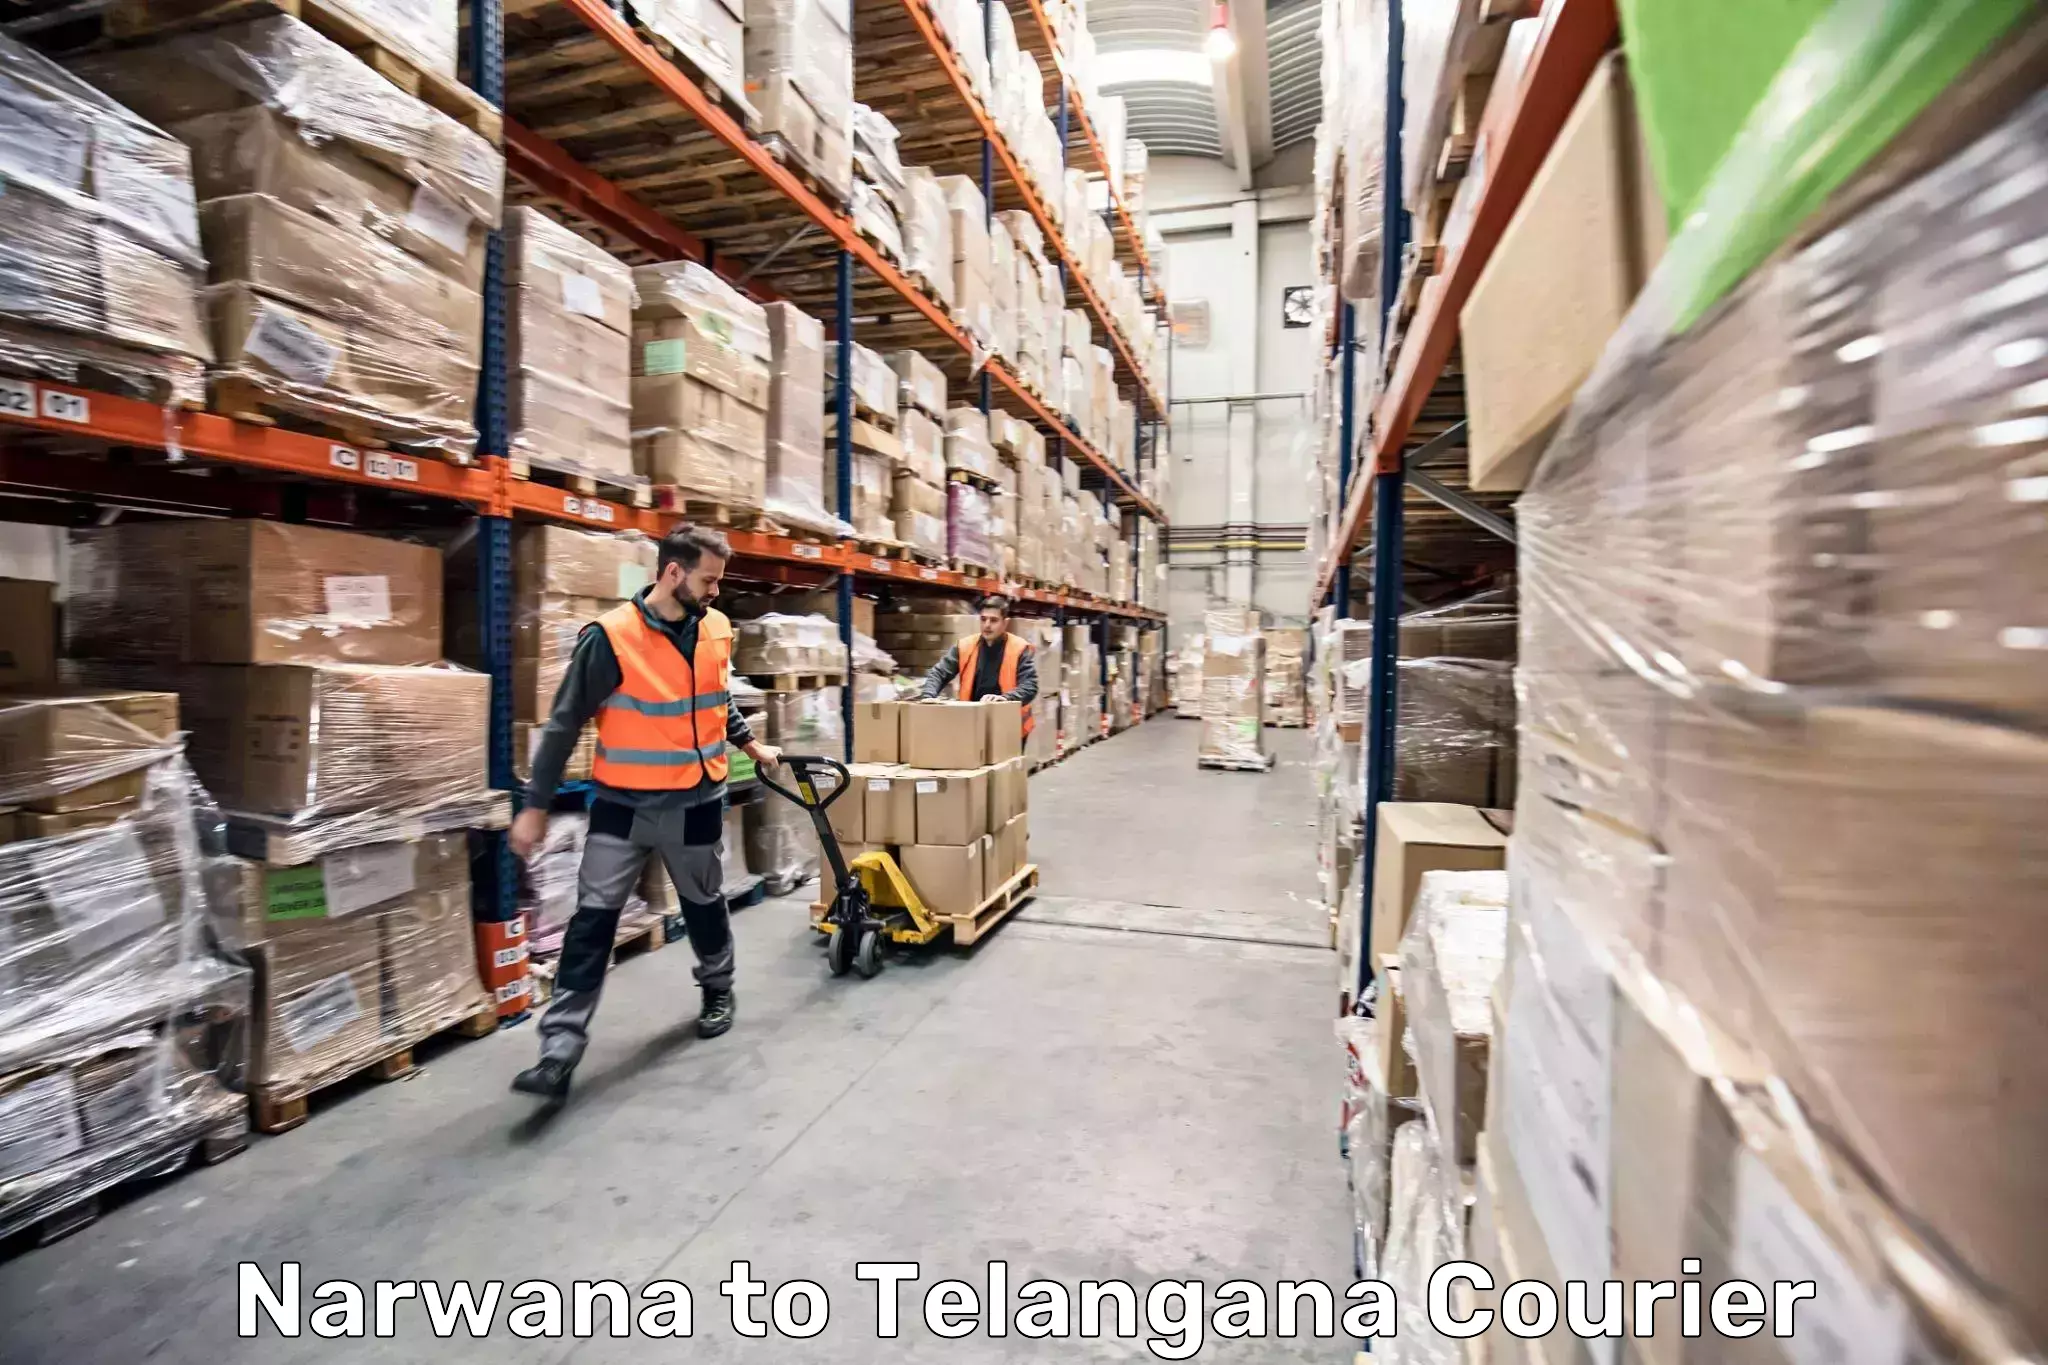 Baggage shipping service Narwana to Alair